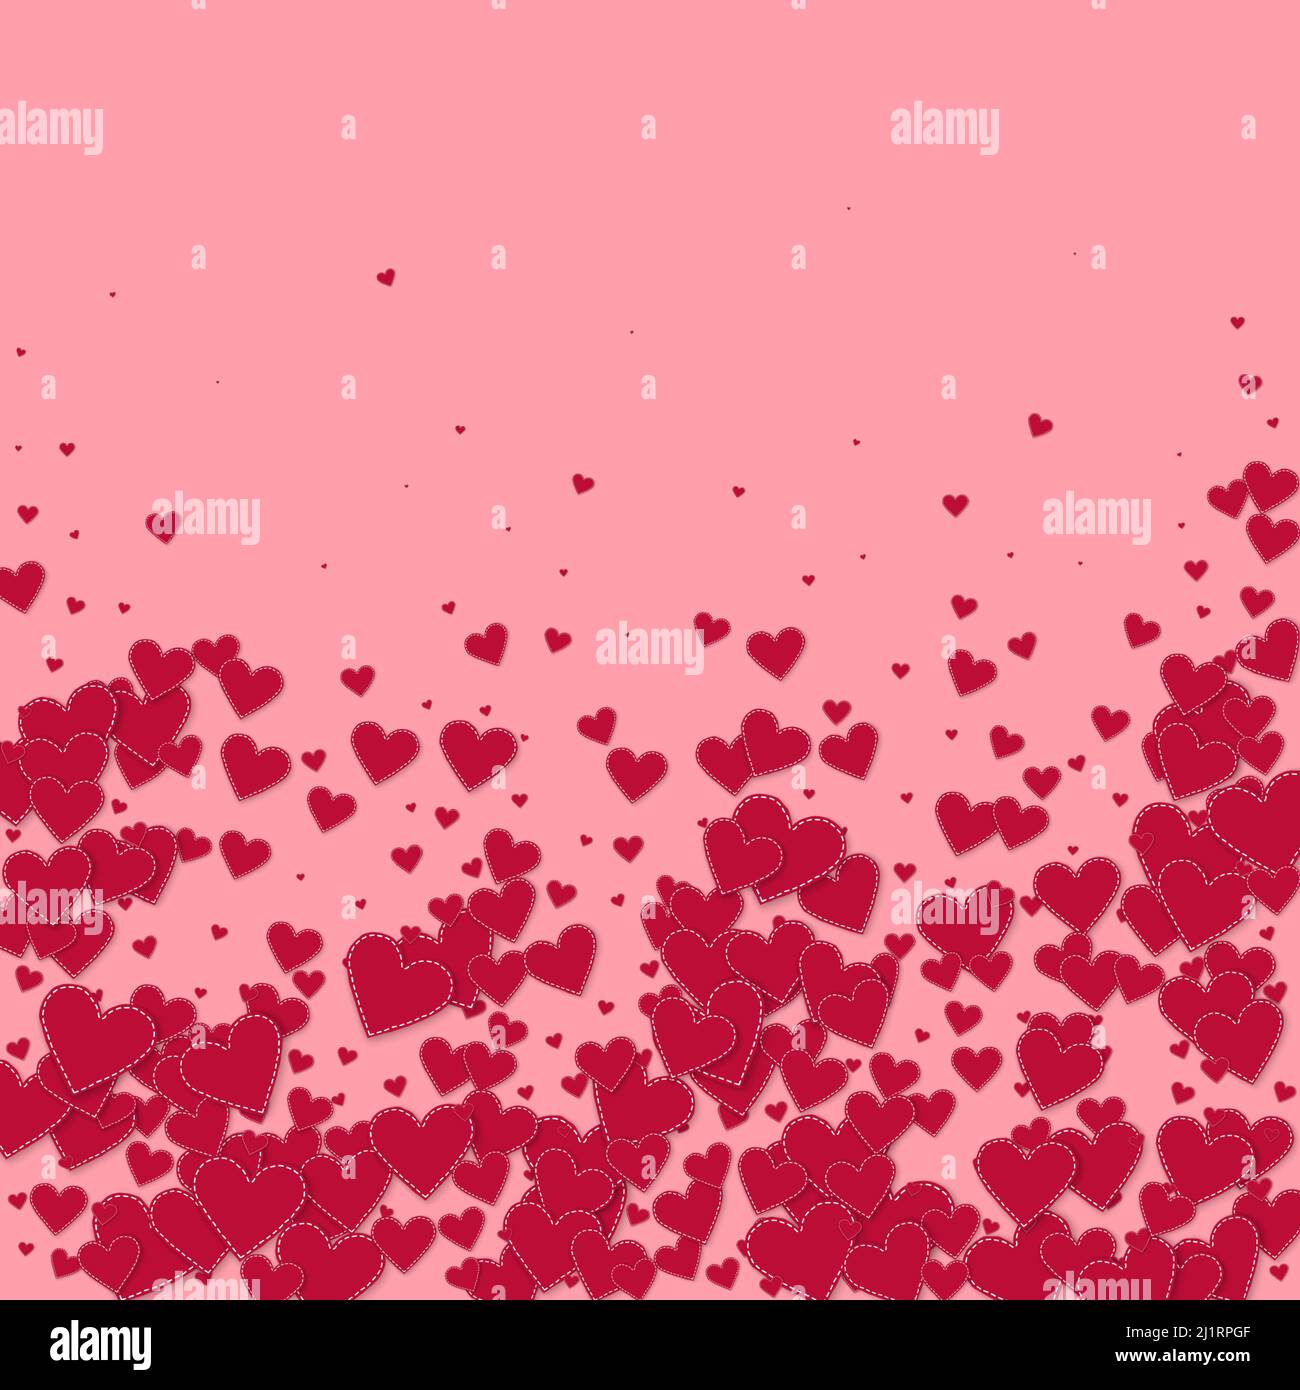 Rotes Herz liebt Konfettis. Valentinstag fallenden regen saftigen Hintergrund. Herabfallend genähte Papierherzen Konfetti auf rosa Hintergrund. Kreative Vektordarstellung. Stock Vektor